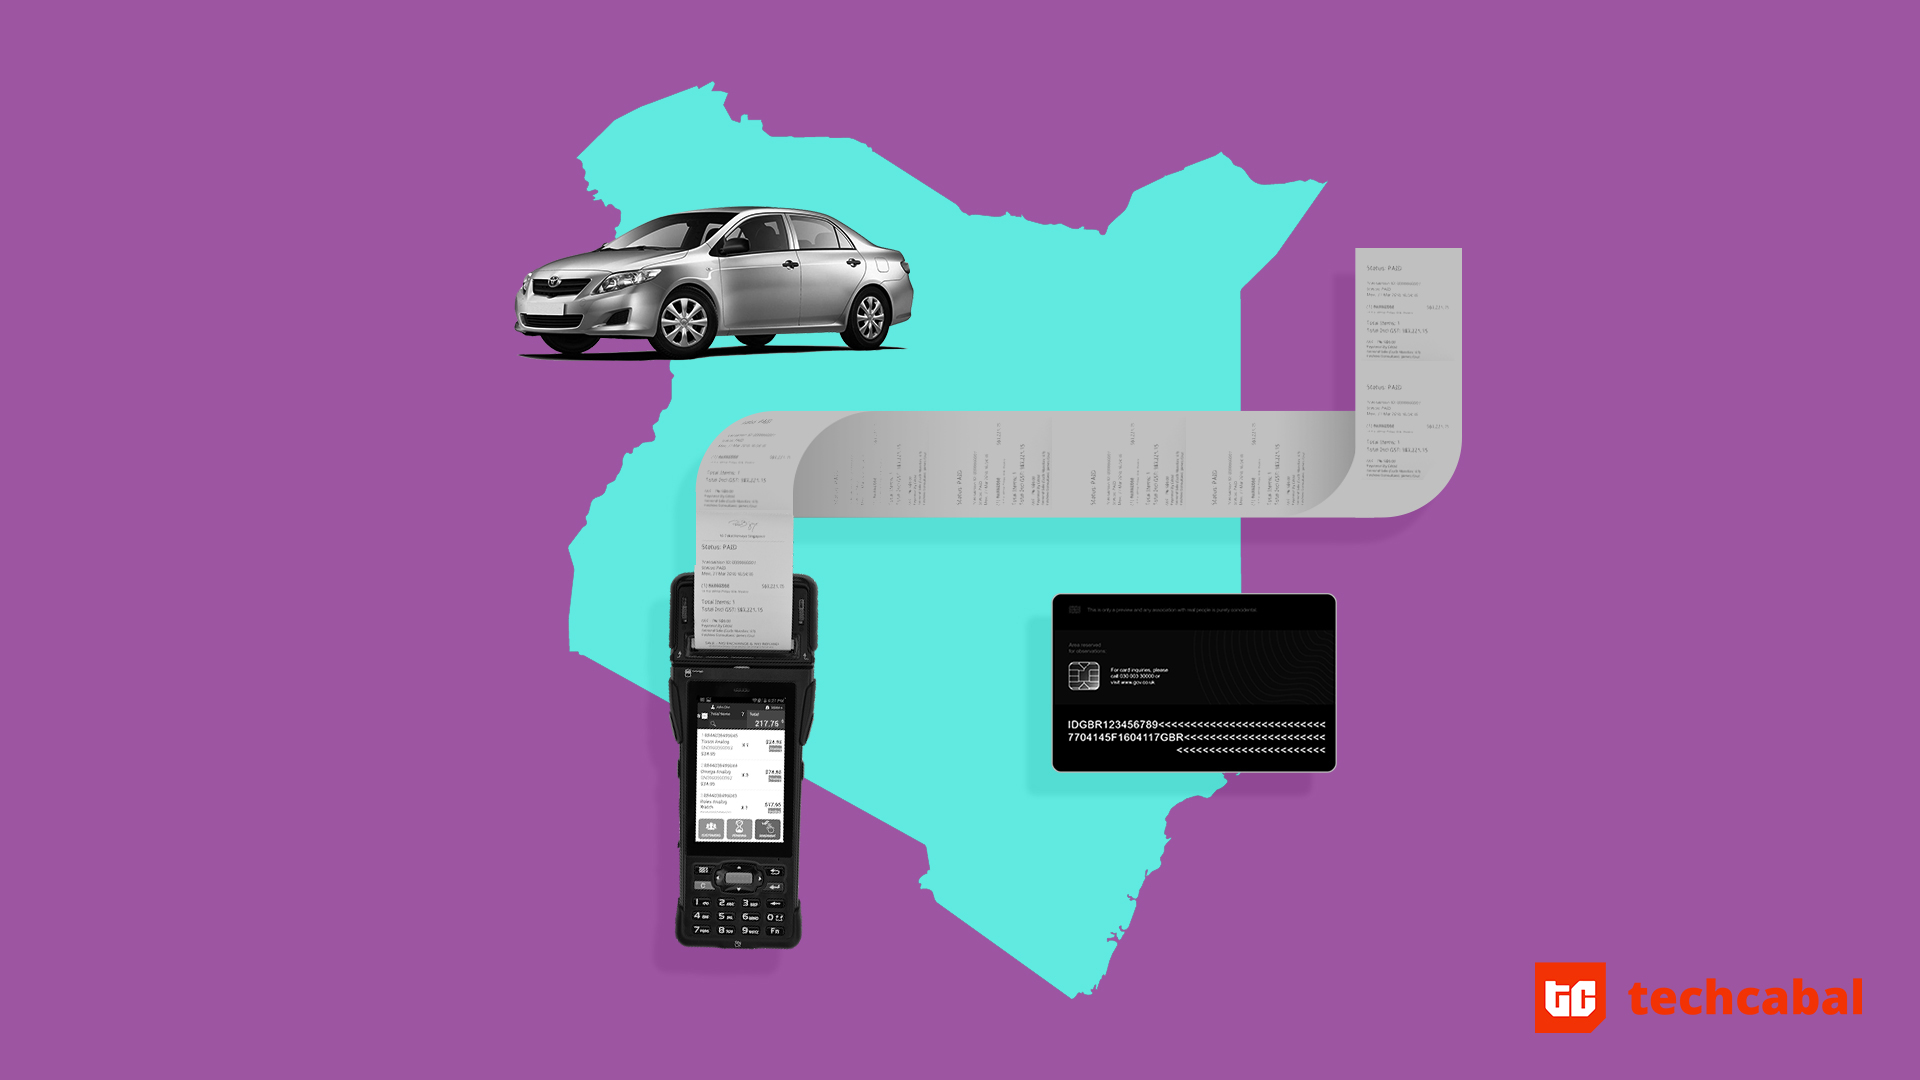 What's tech like in Kenya?